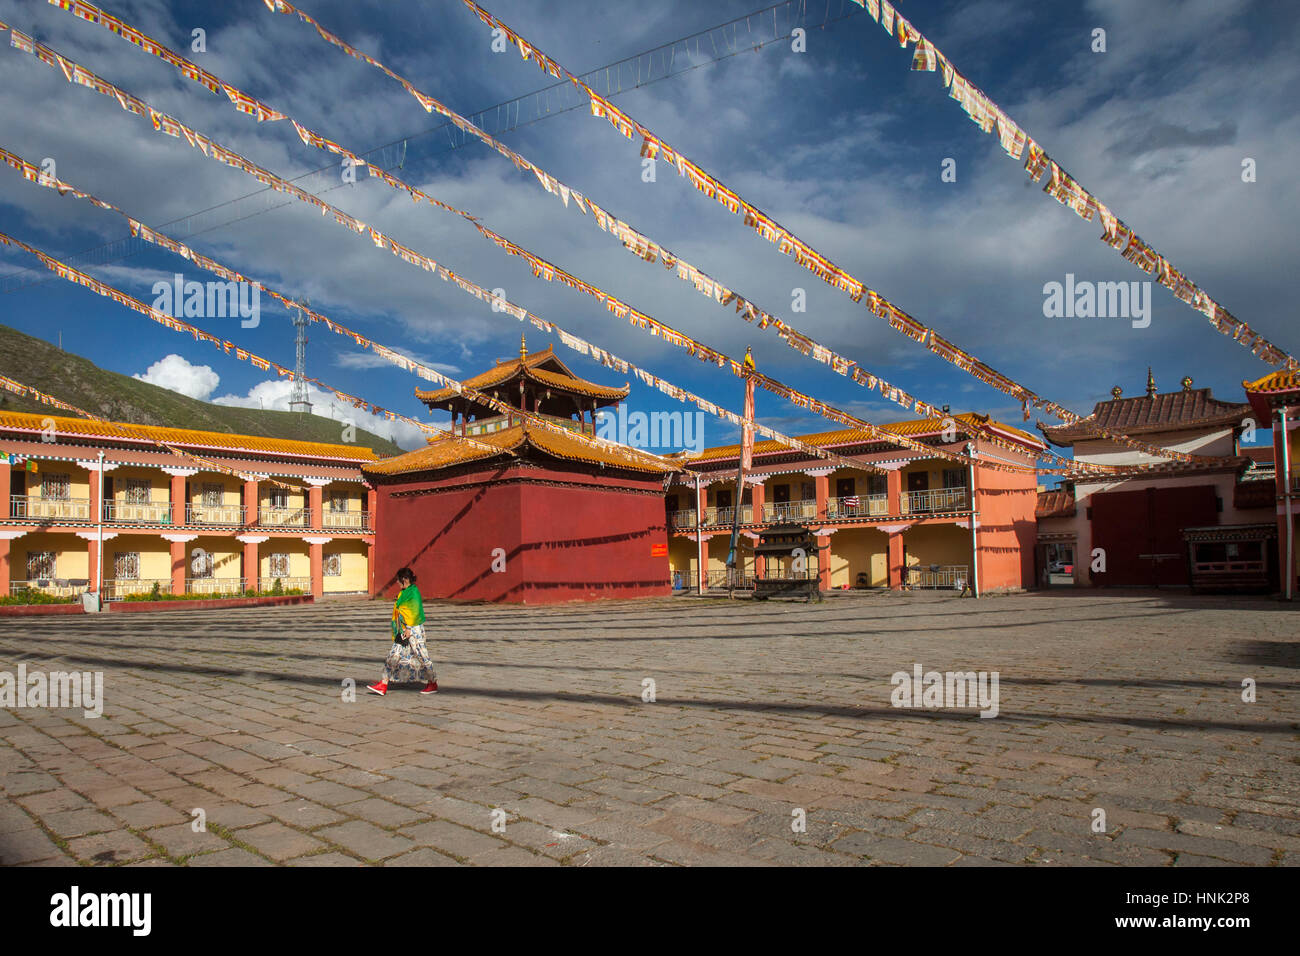 Monastère Tagong cour intérieure dans la région du plateau tibétain dans le Sichuan, Chine Banque D'Images